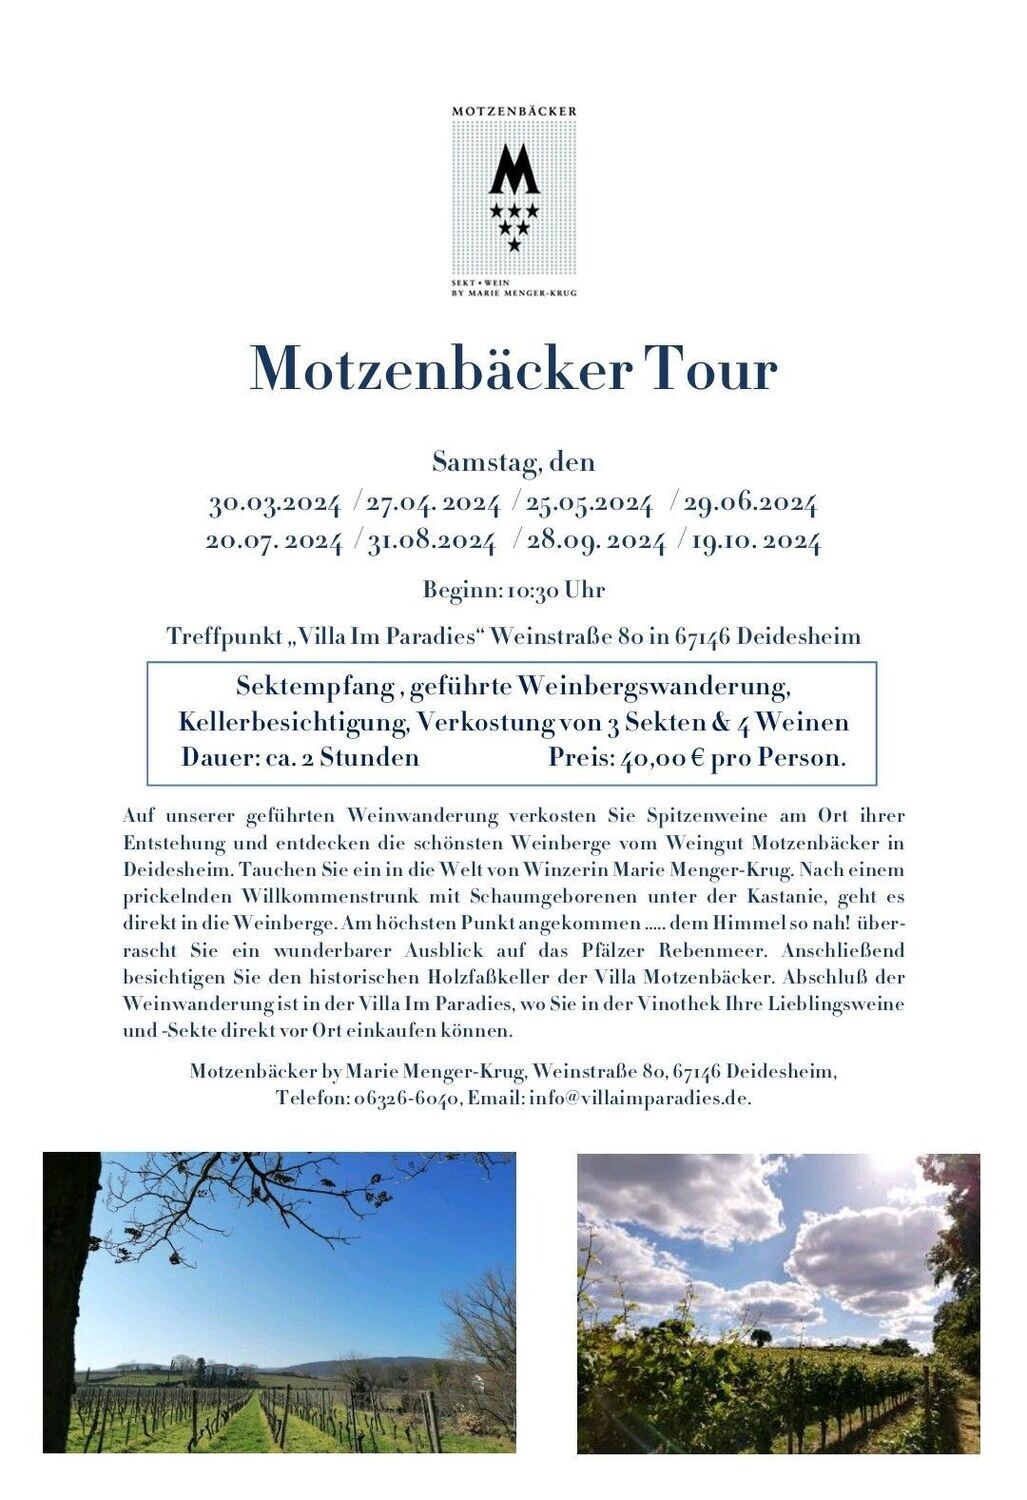 8) Motzenbäcker Tours -19.10.24 Weinbergsrundgang